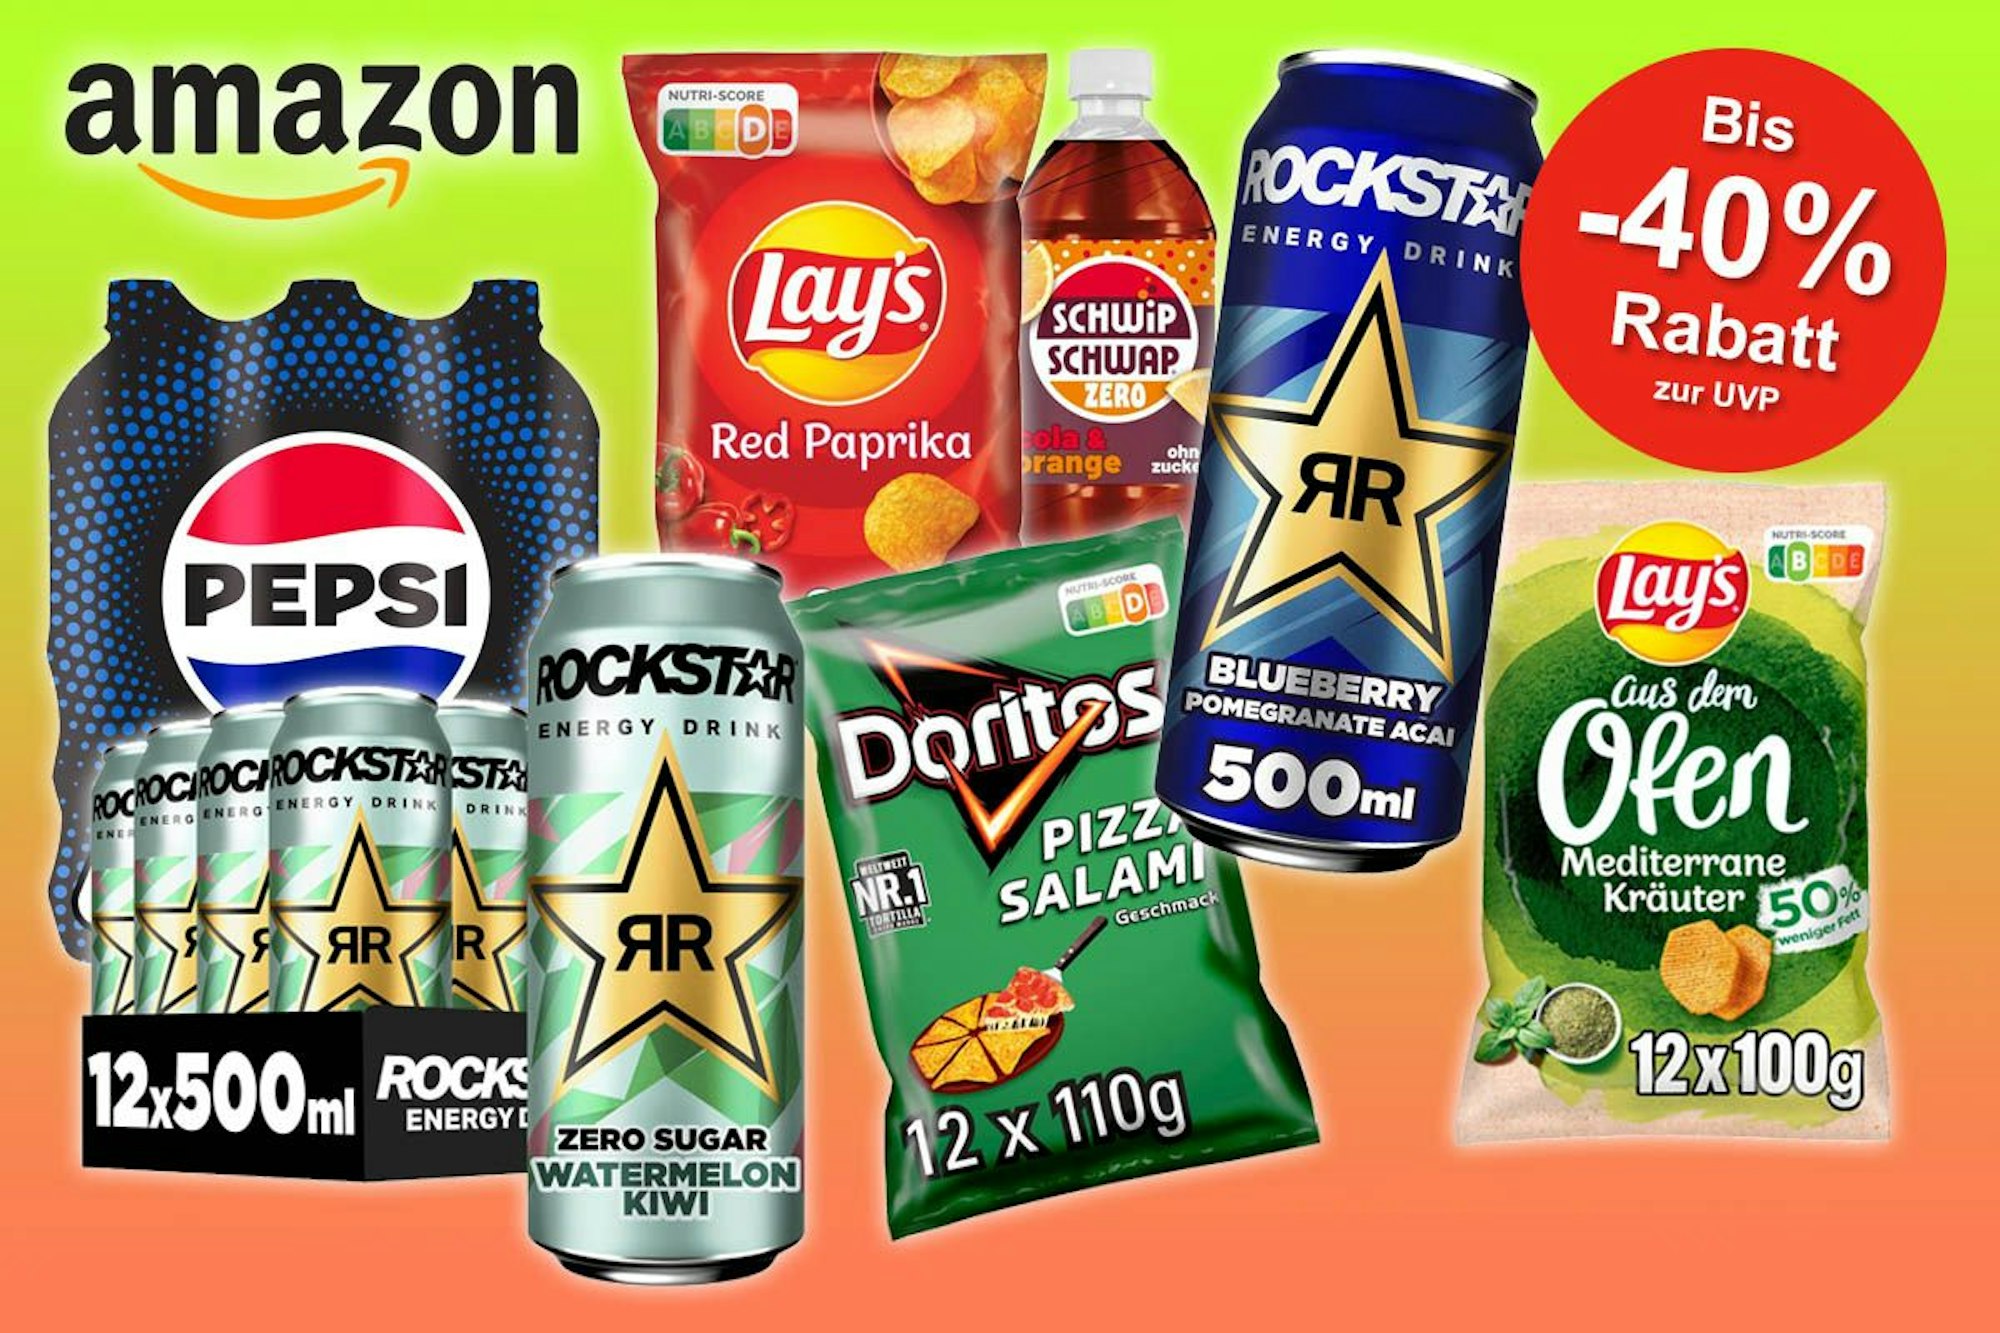 Pepsi, Lays'Chops, Rockstar Energydrink und Doritos Nacho Chips Produktpackungen.